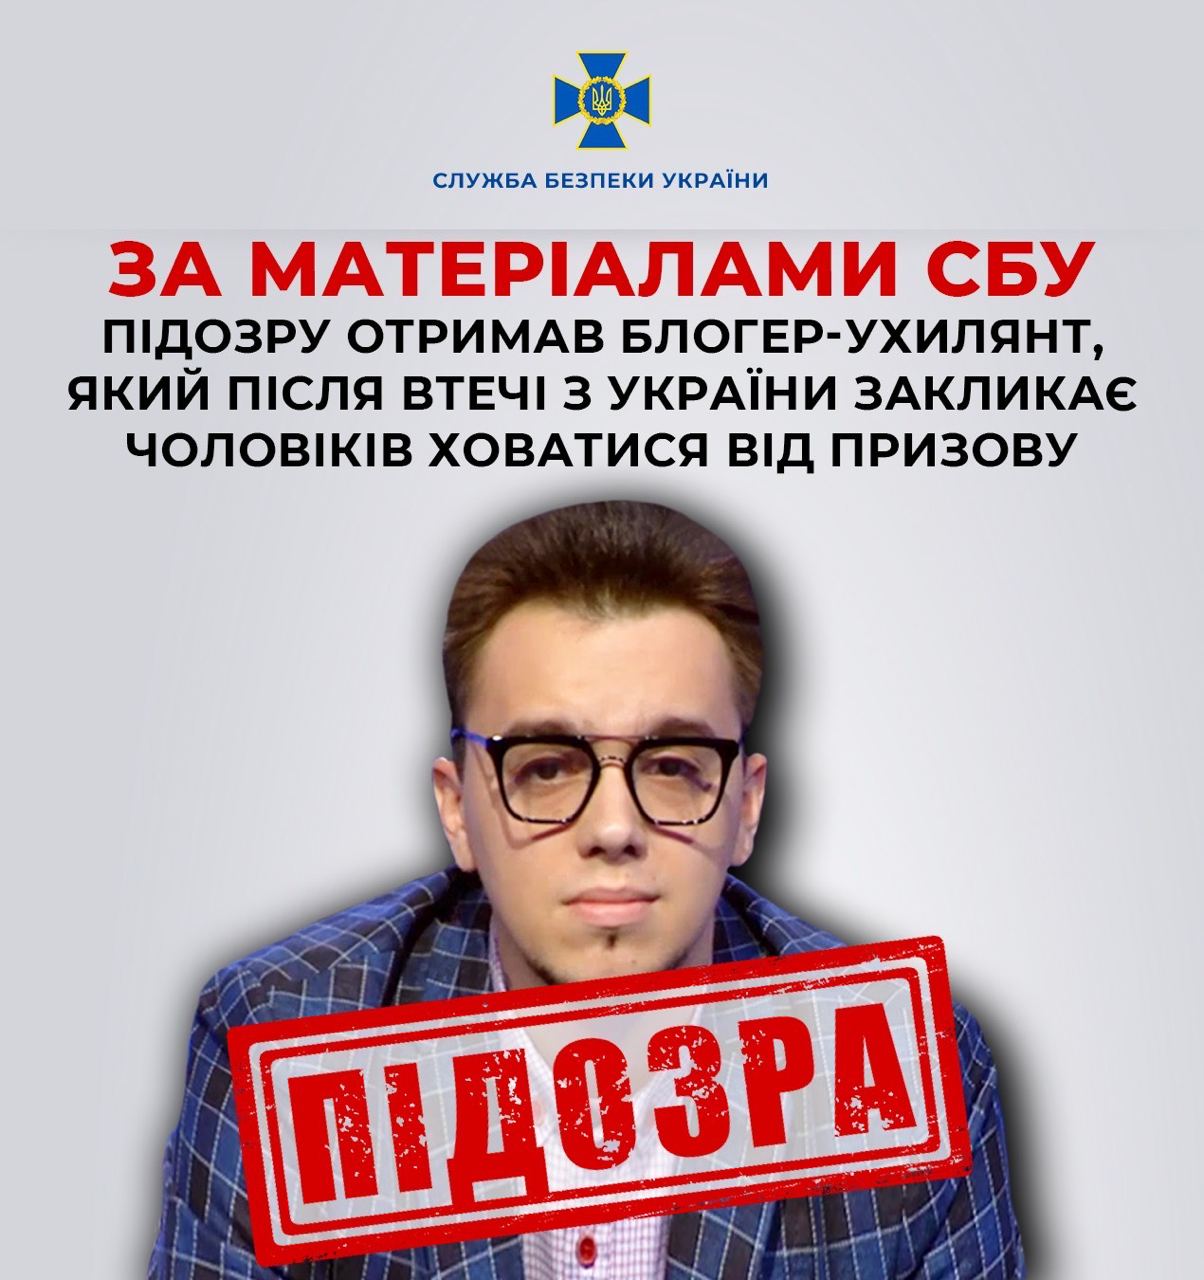 Підозру отримав блогер-ухилянт Мирослав Олешко, який після втечі з України закликає чоловіків ховатися від призову